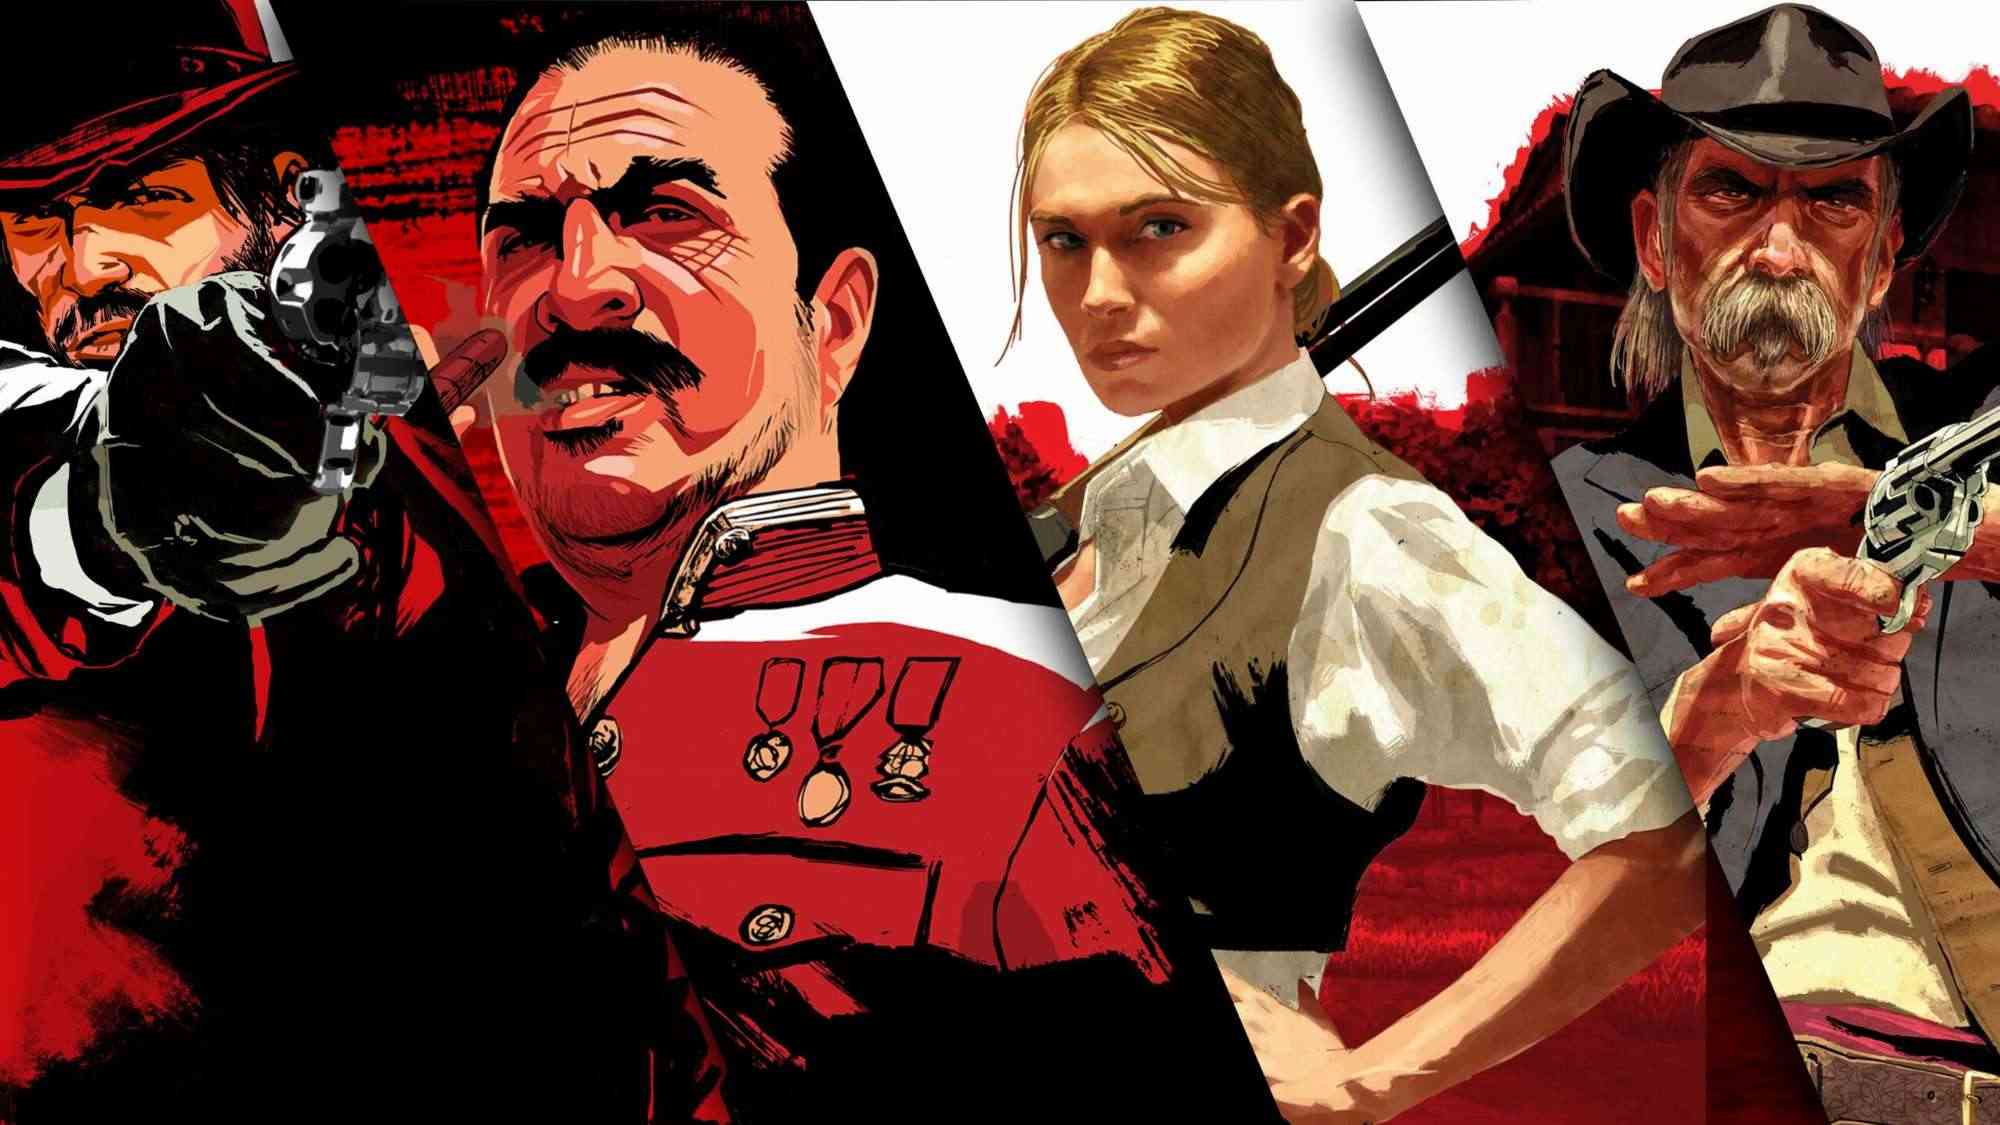 Trailer Mới Nhất Của Red Dead Redemption Nhận Về Hàng Loạt "Dislike" Từ Cộng Đồng Game Thủ